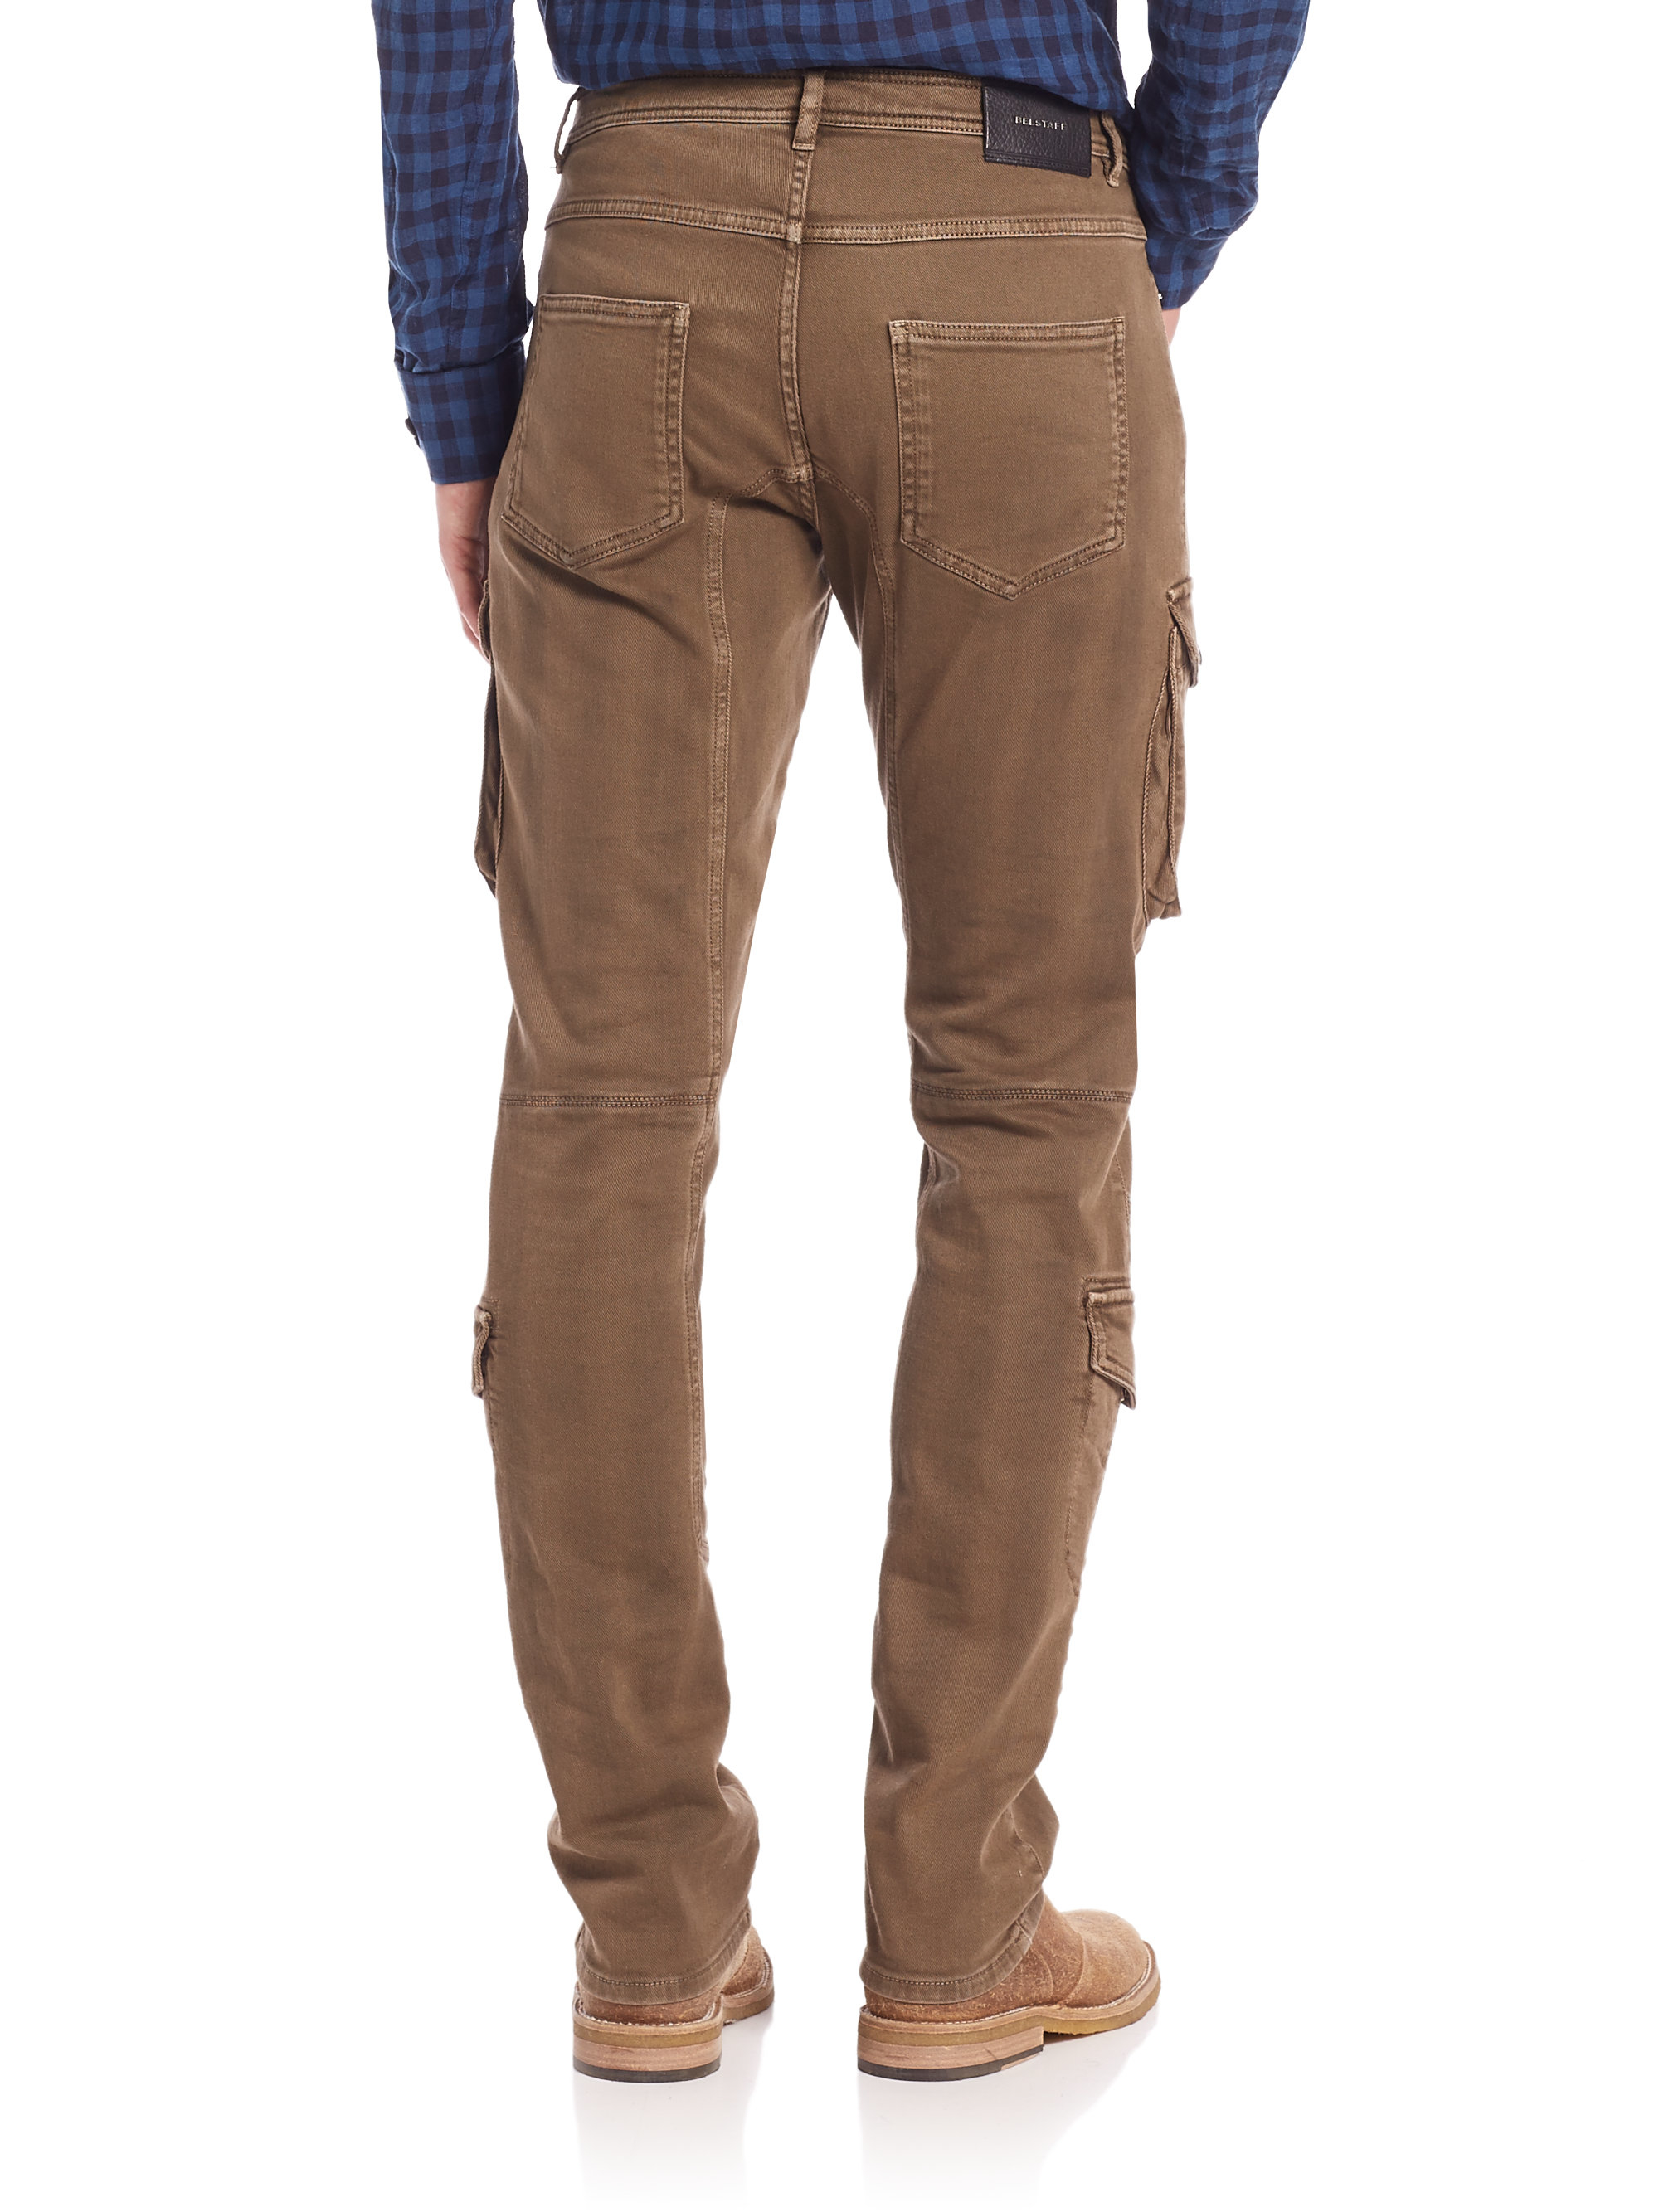 Lyst - Belstaff Elbert Slim-fit Cargo Pants in Gray for Men